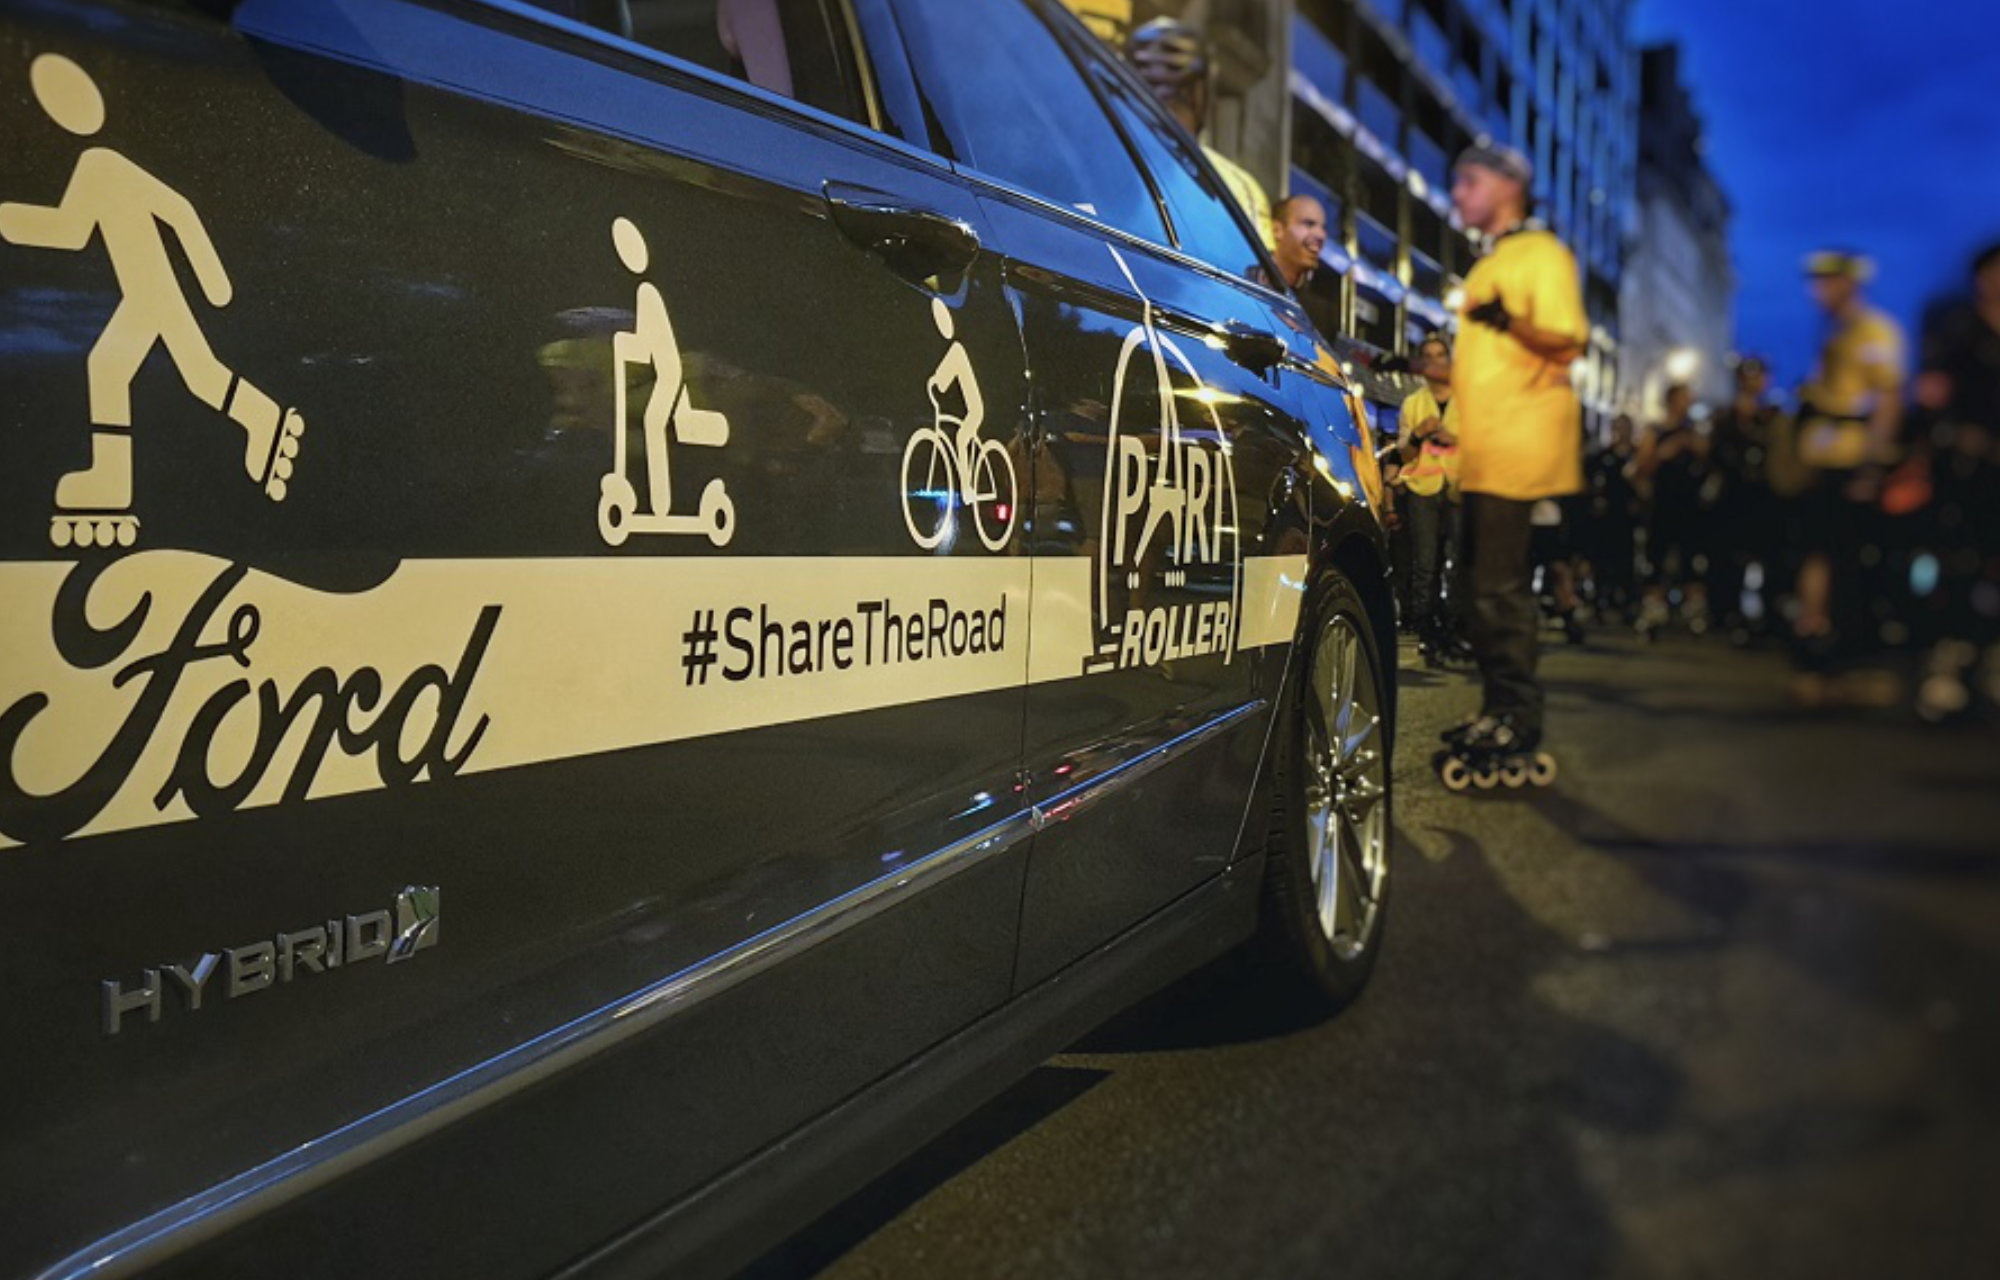 Ford devient partenaire officiel de Pari Roller, la célèbre randonnée parisienne qui s'ouvre aux nouvelles mobilités